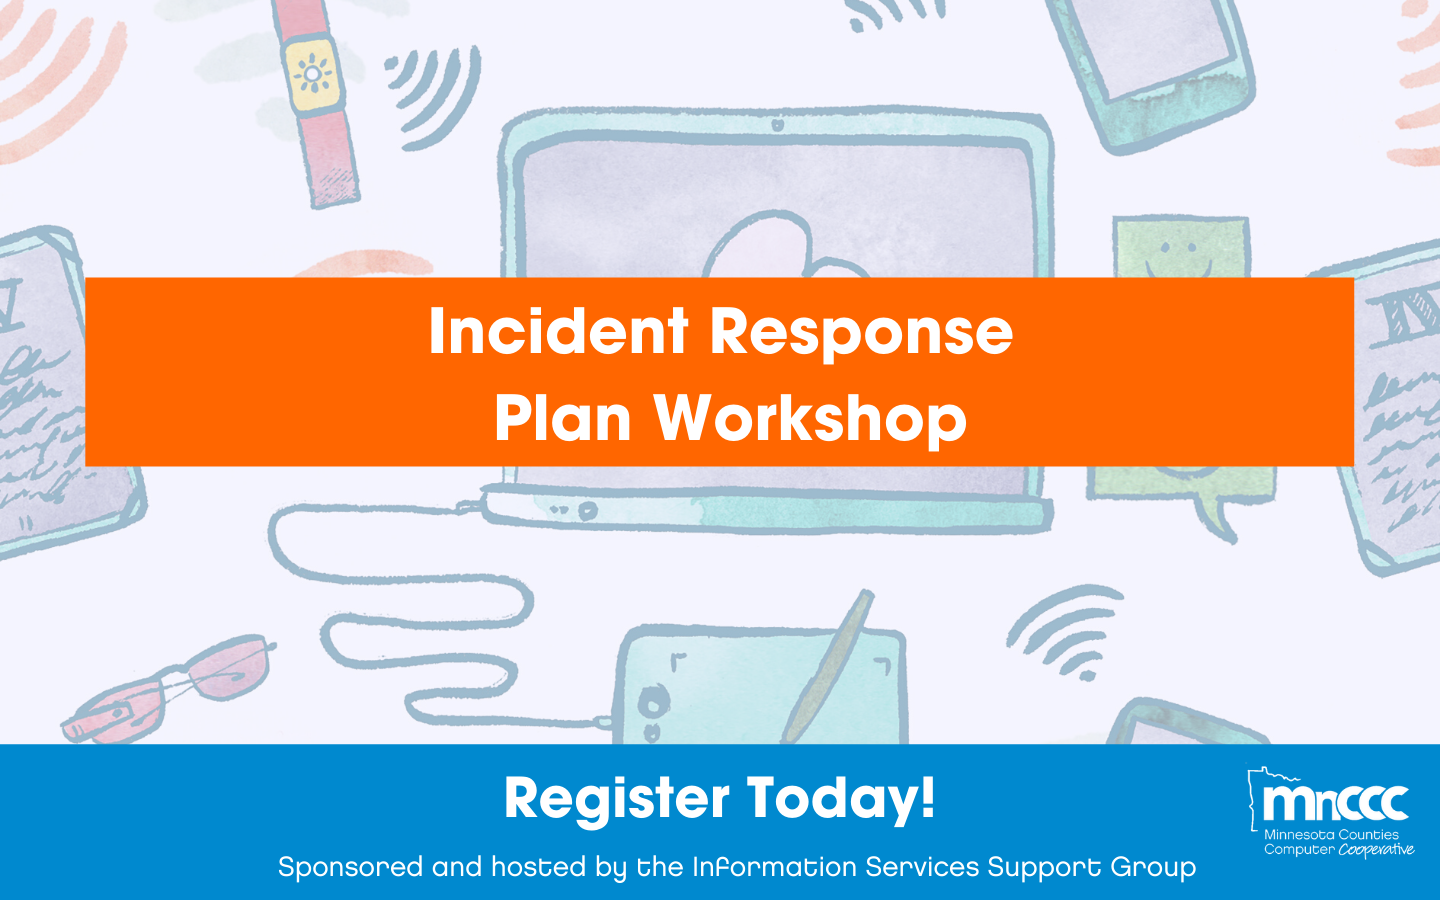 Incident Response Plan Workshop Banner